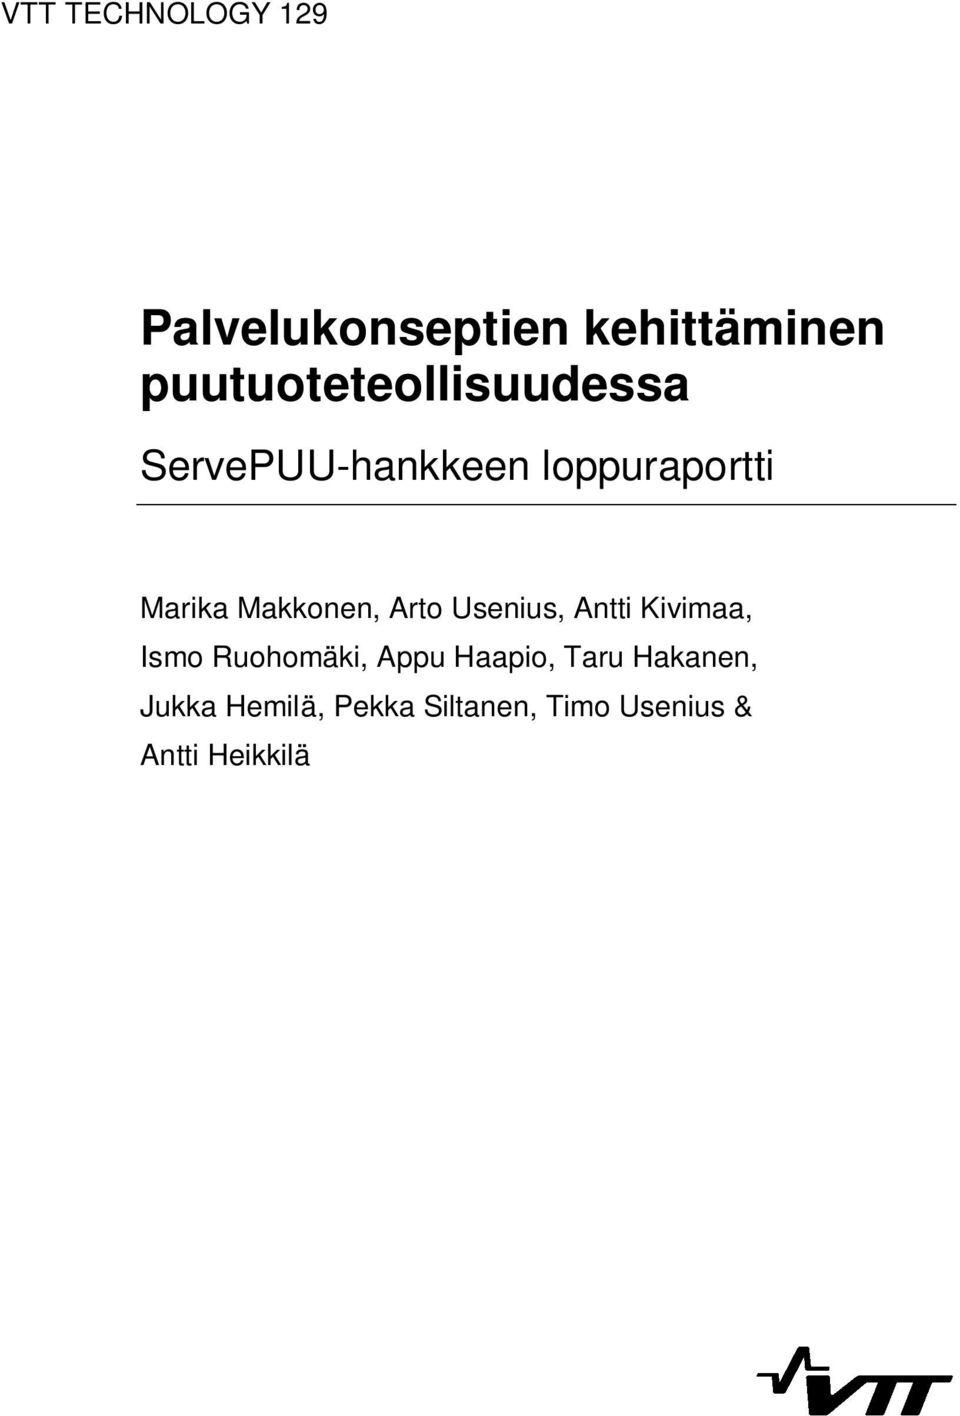 Makkonen, Arto Usenius, Antti Kivimaa, Ismo Ruohomäki, Appu